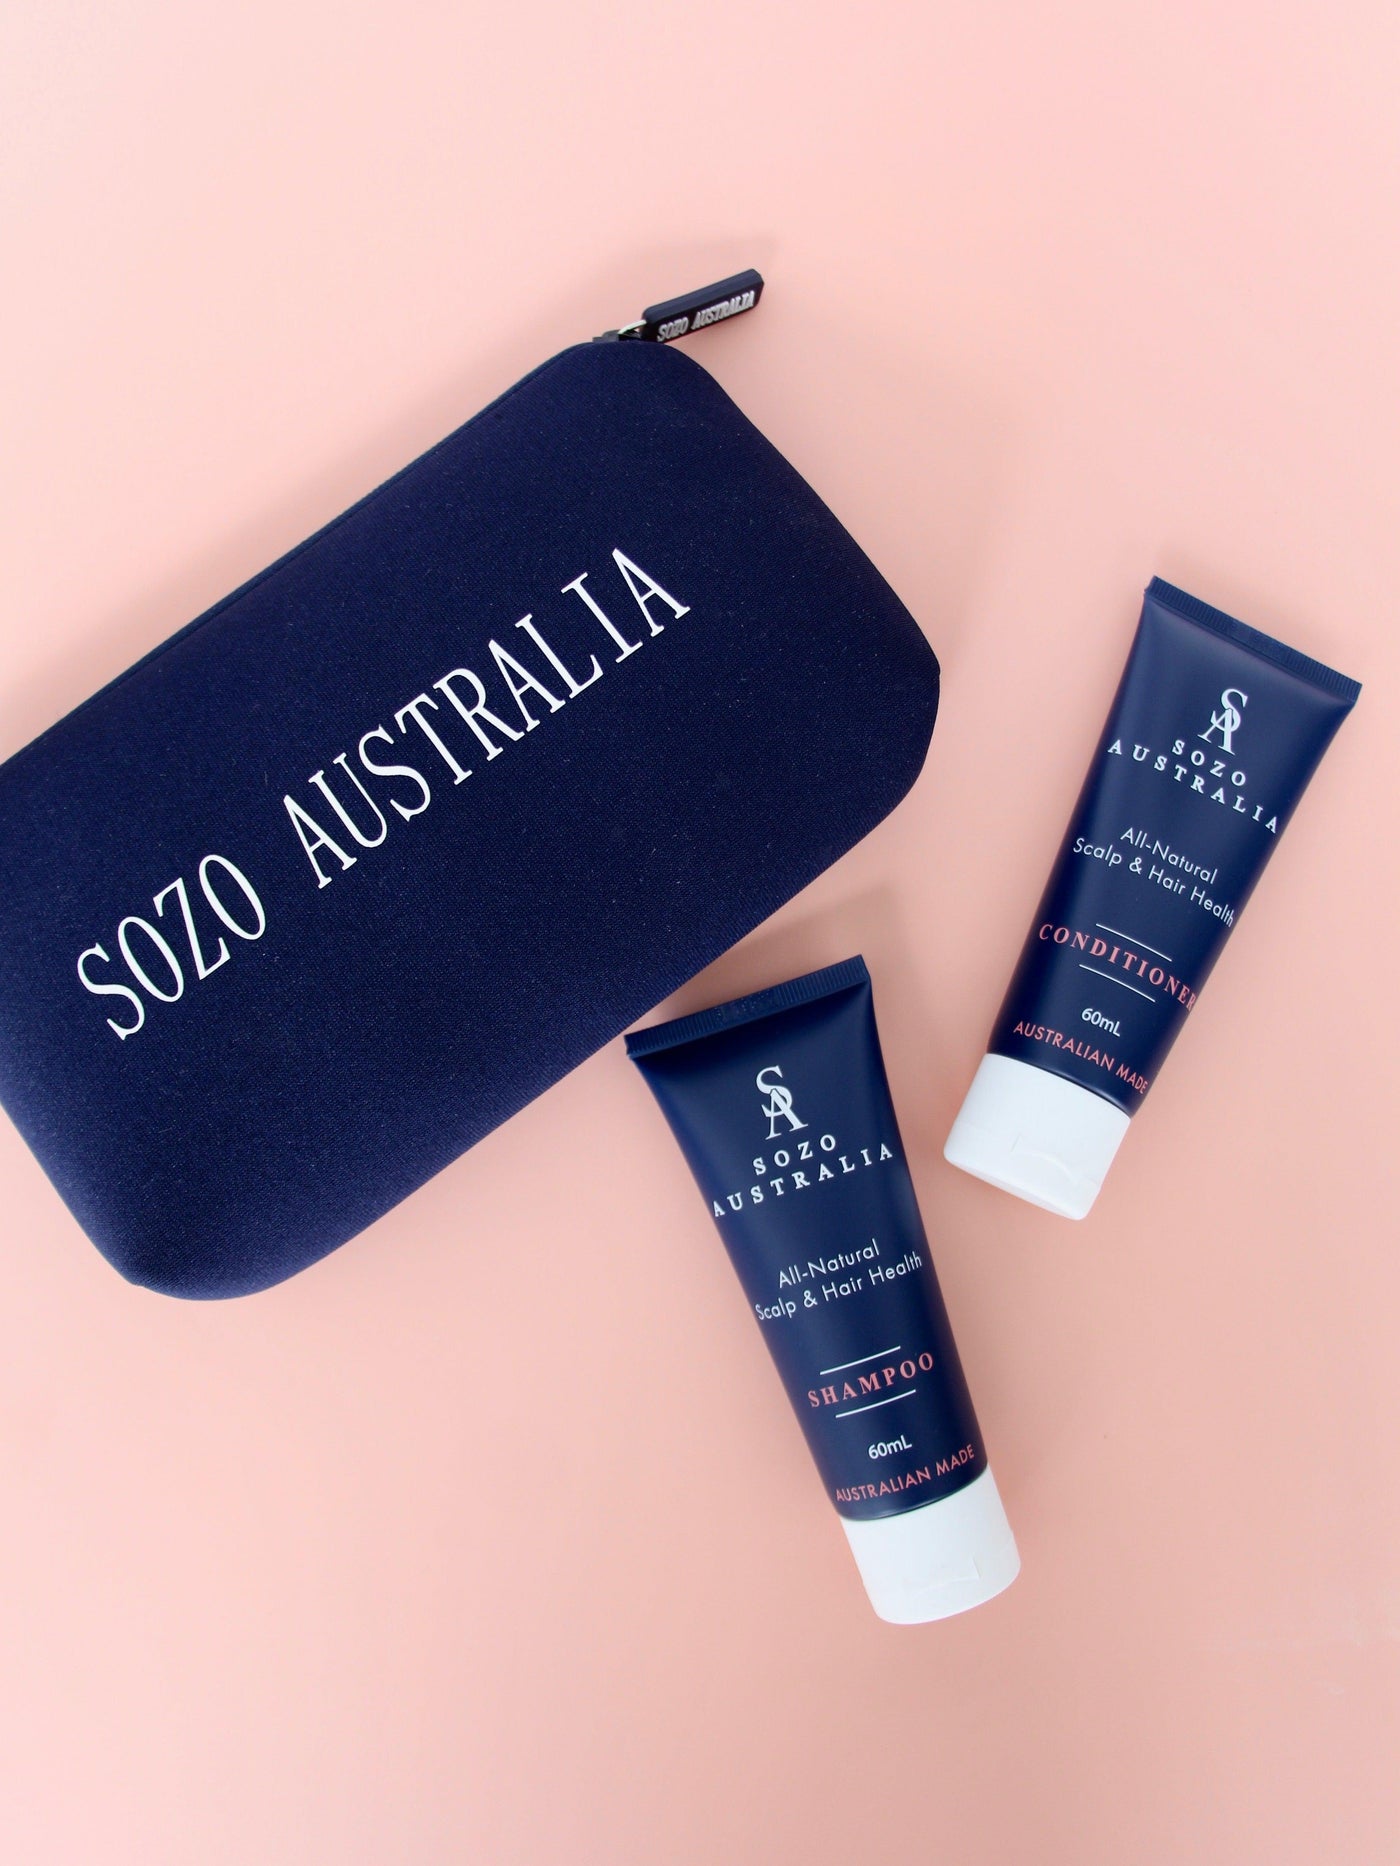 Take Me With You Hair Health Duo - Travel Size 60mL - Sozo Australia